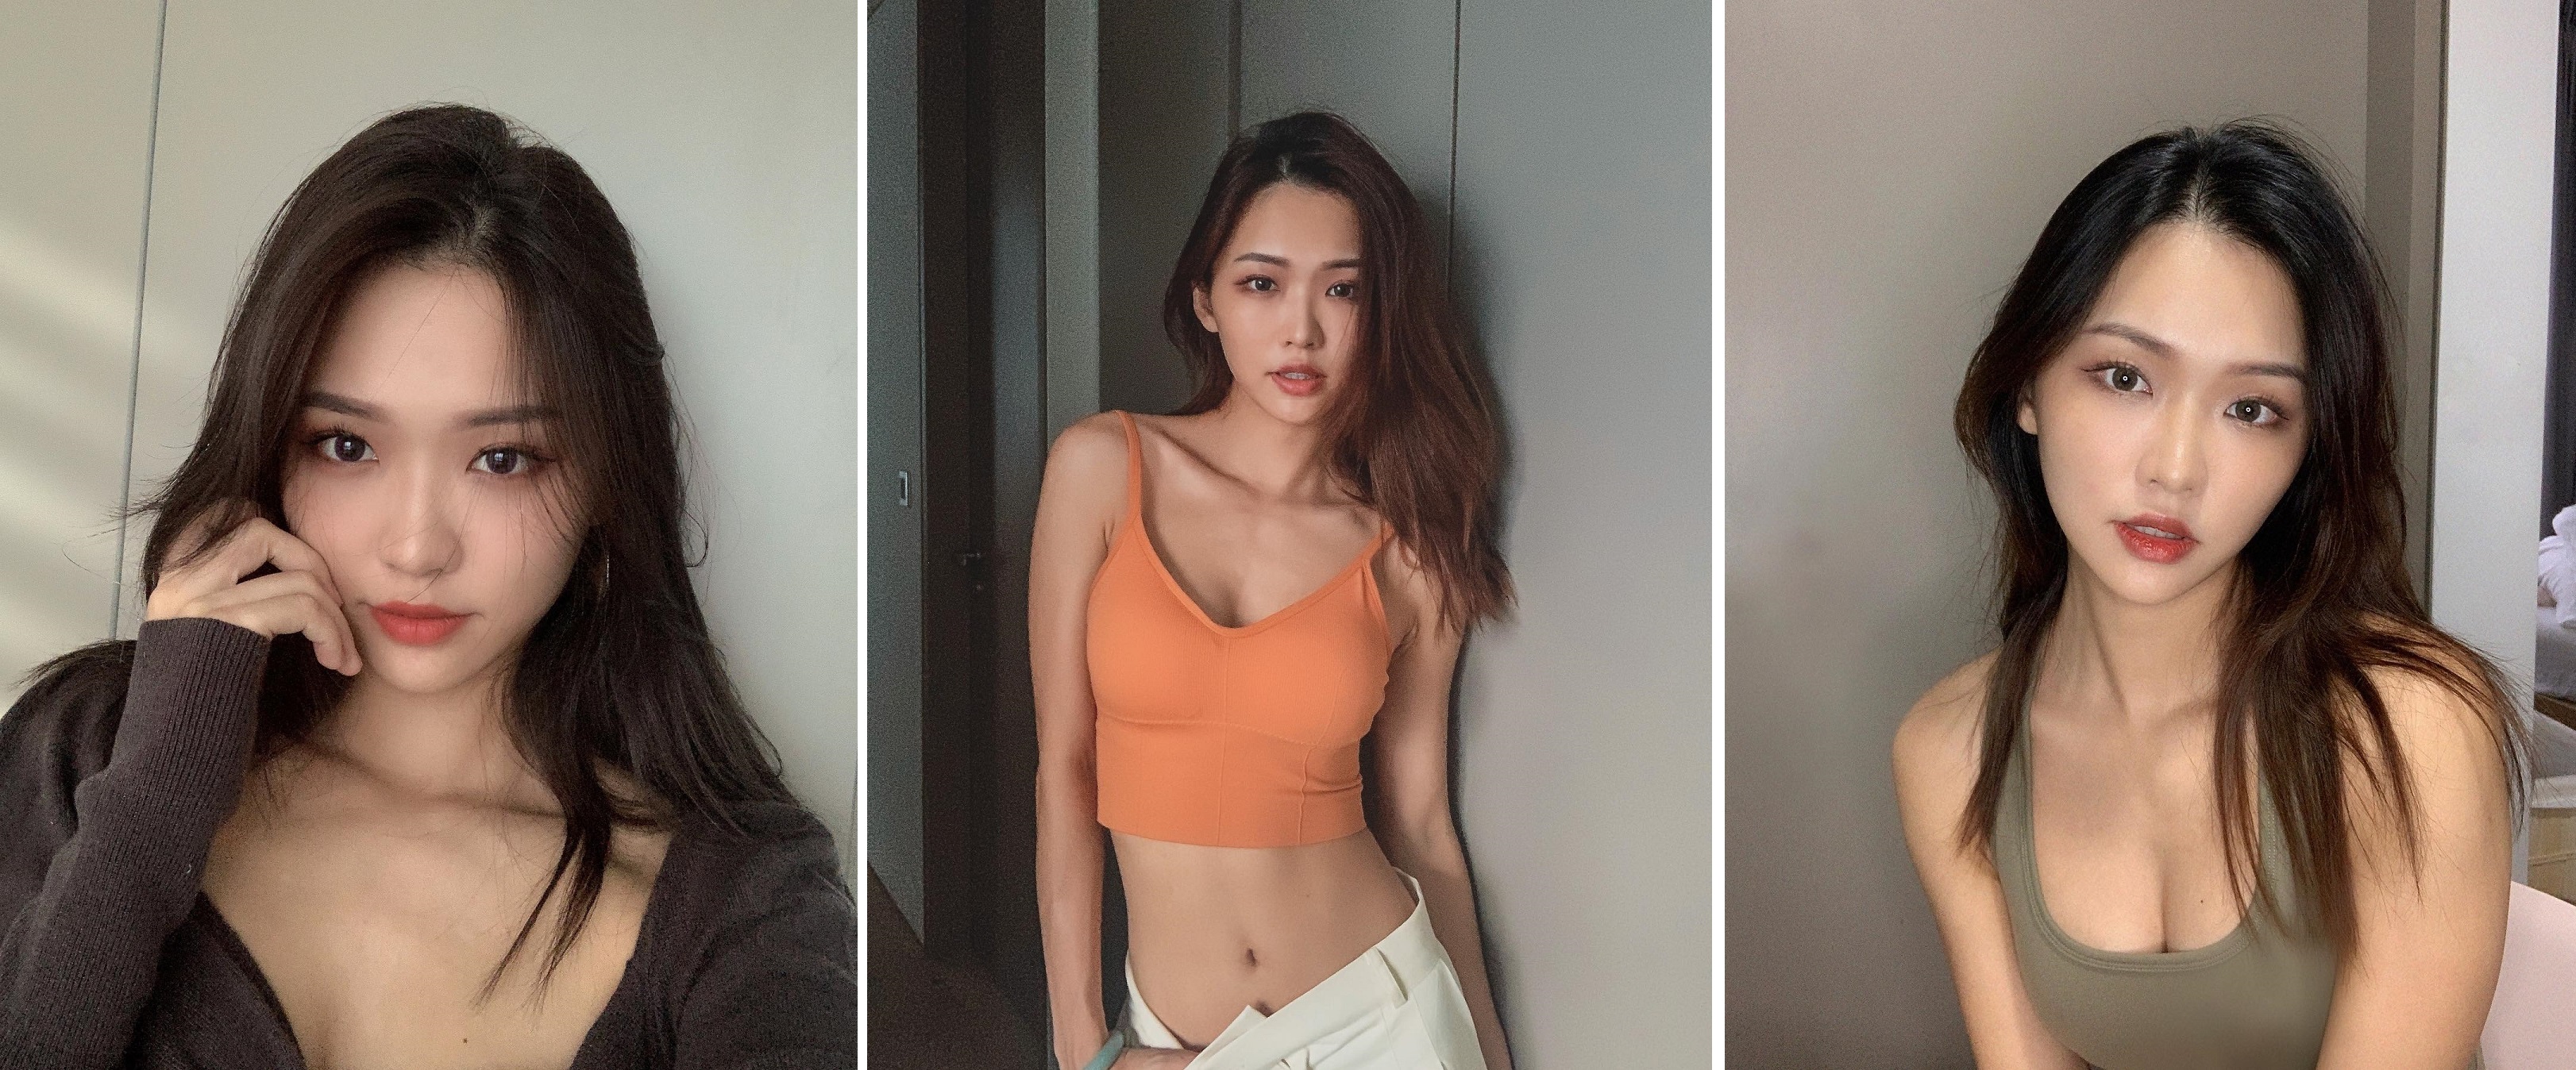 Modelka z Instagrama z Singapuru zarobiła 7,37 miliona dolarów w 10 dni sprzedając zdjęcia NFT